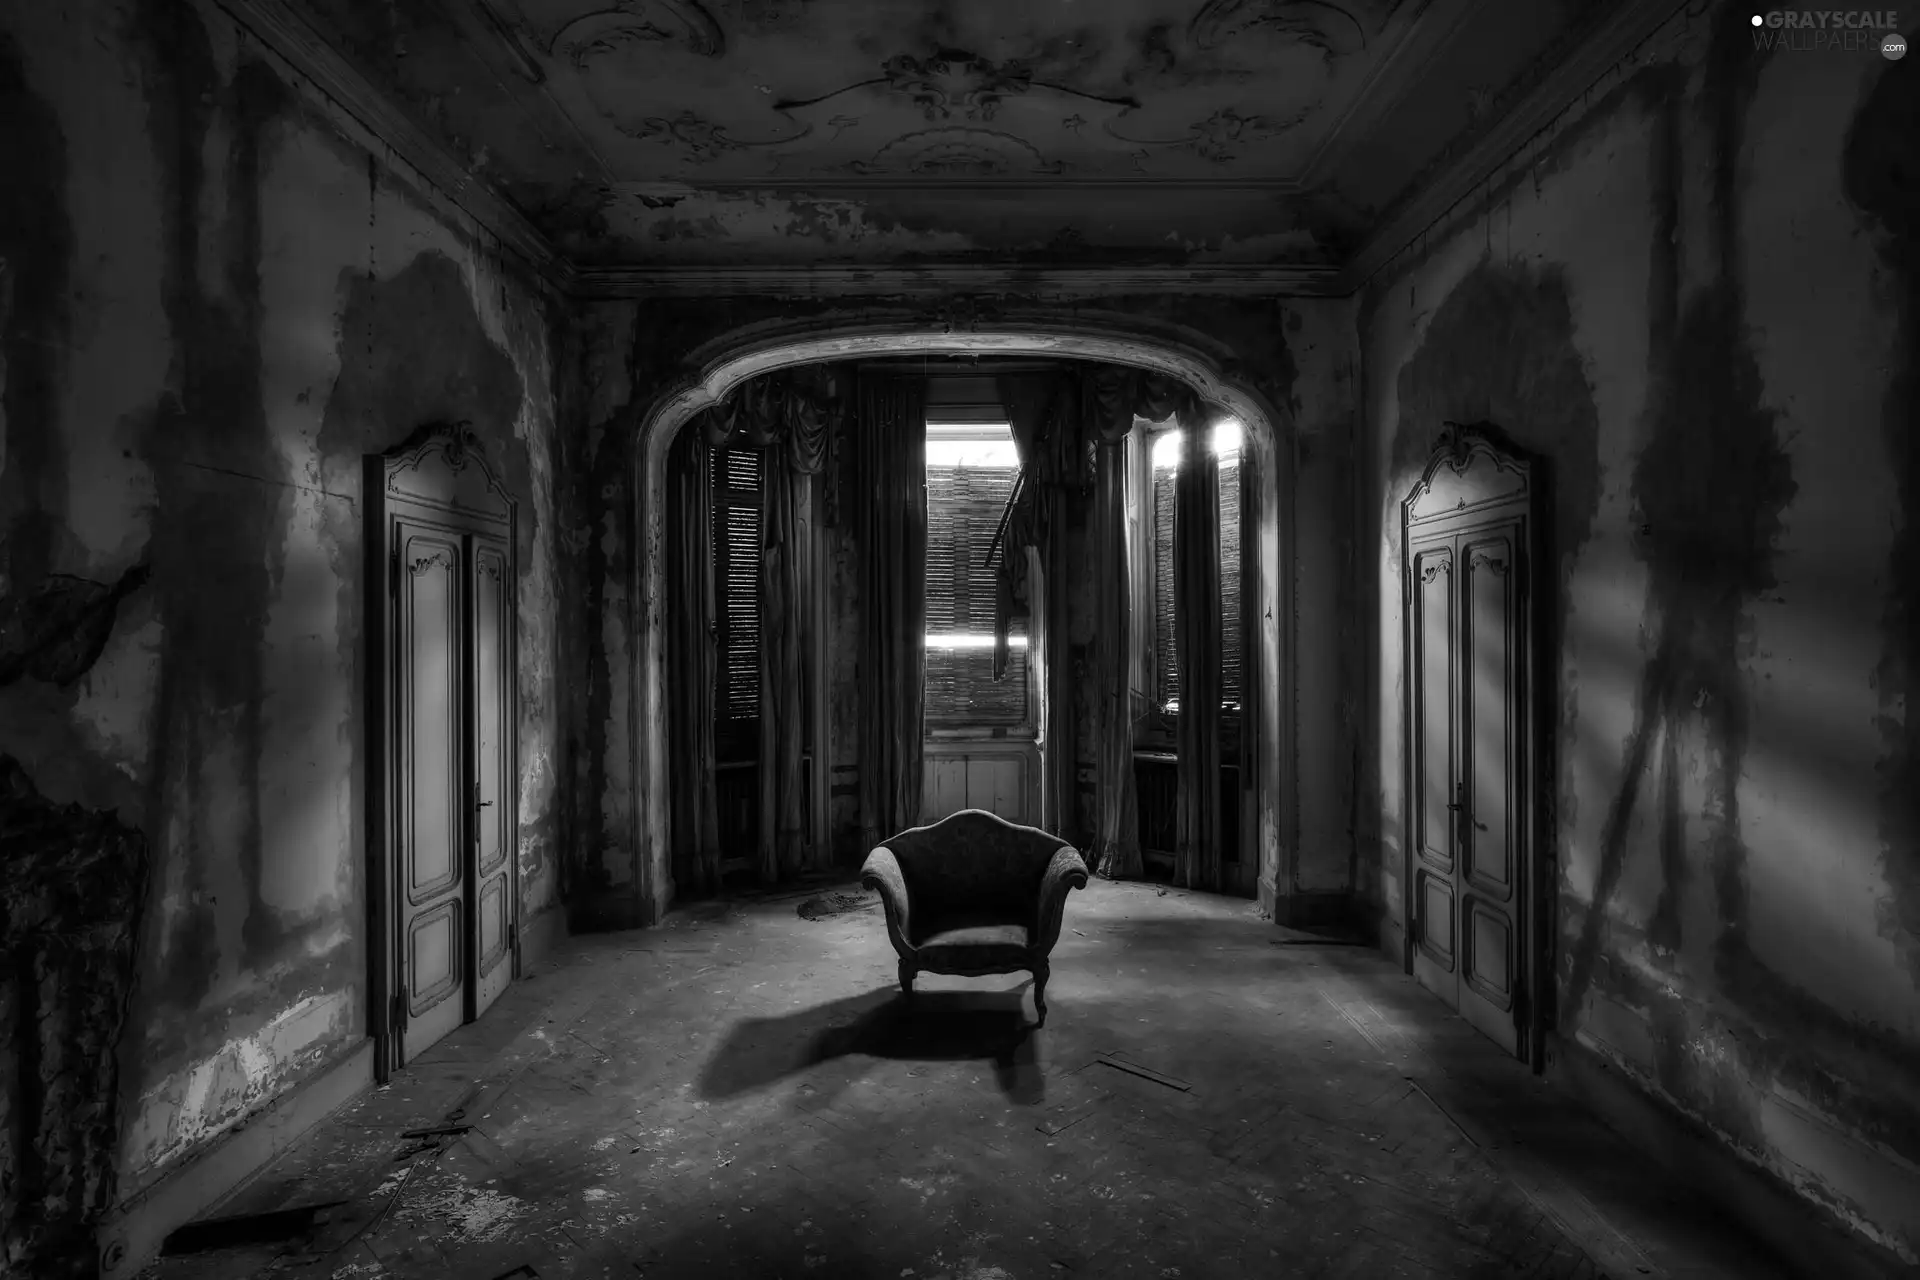 Armchair, Doors, Space, room, Neglected